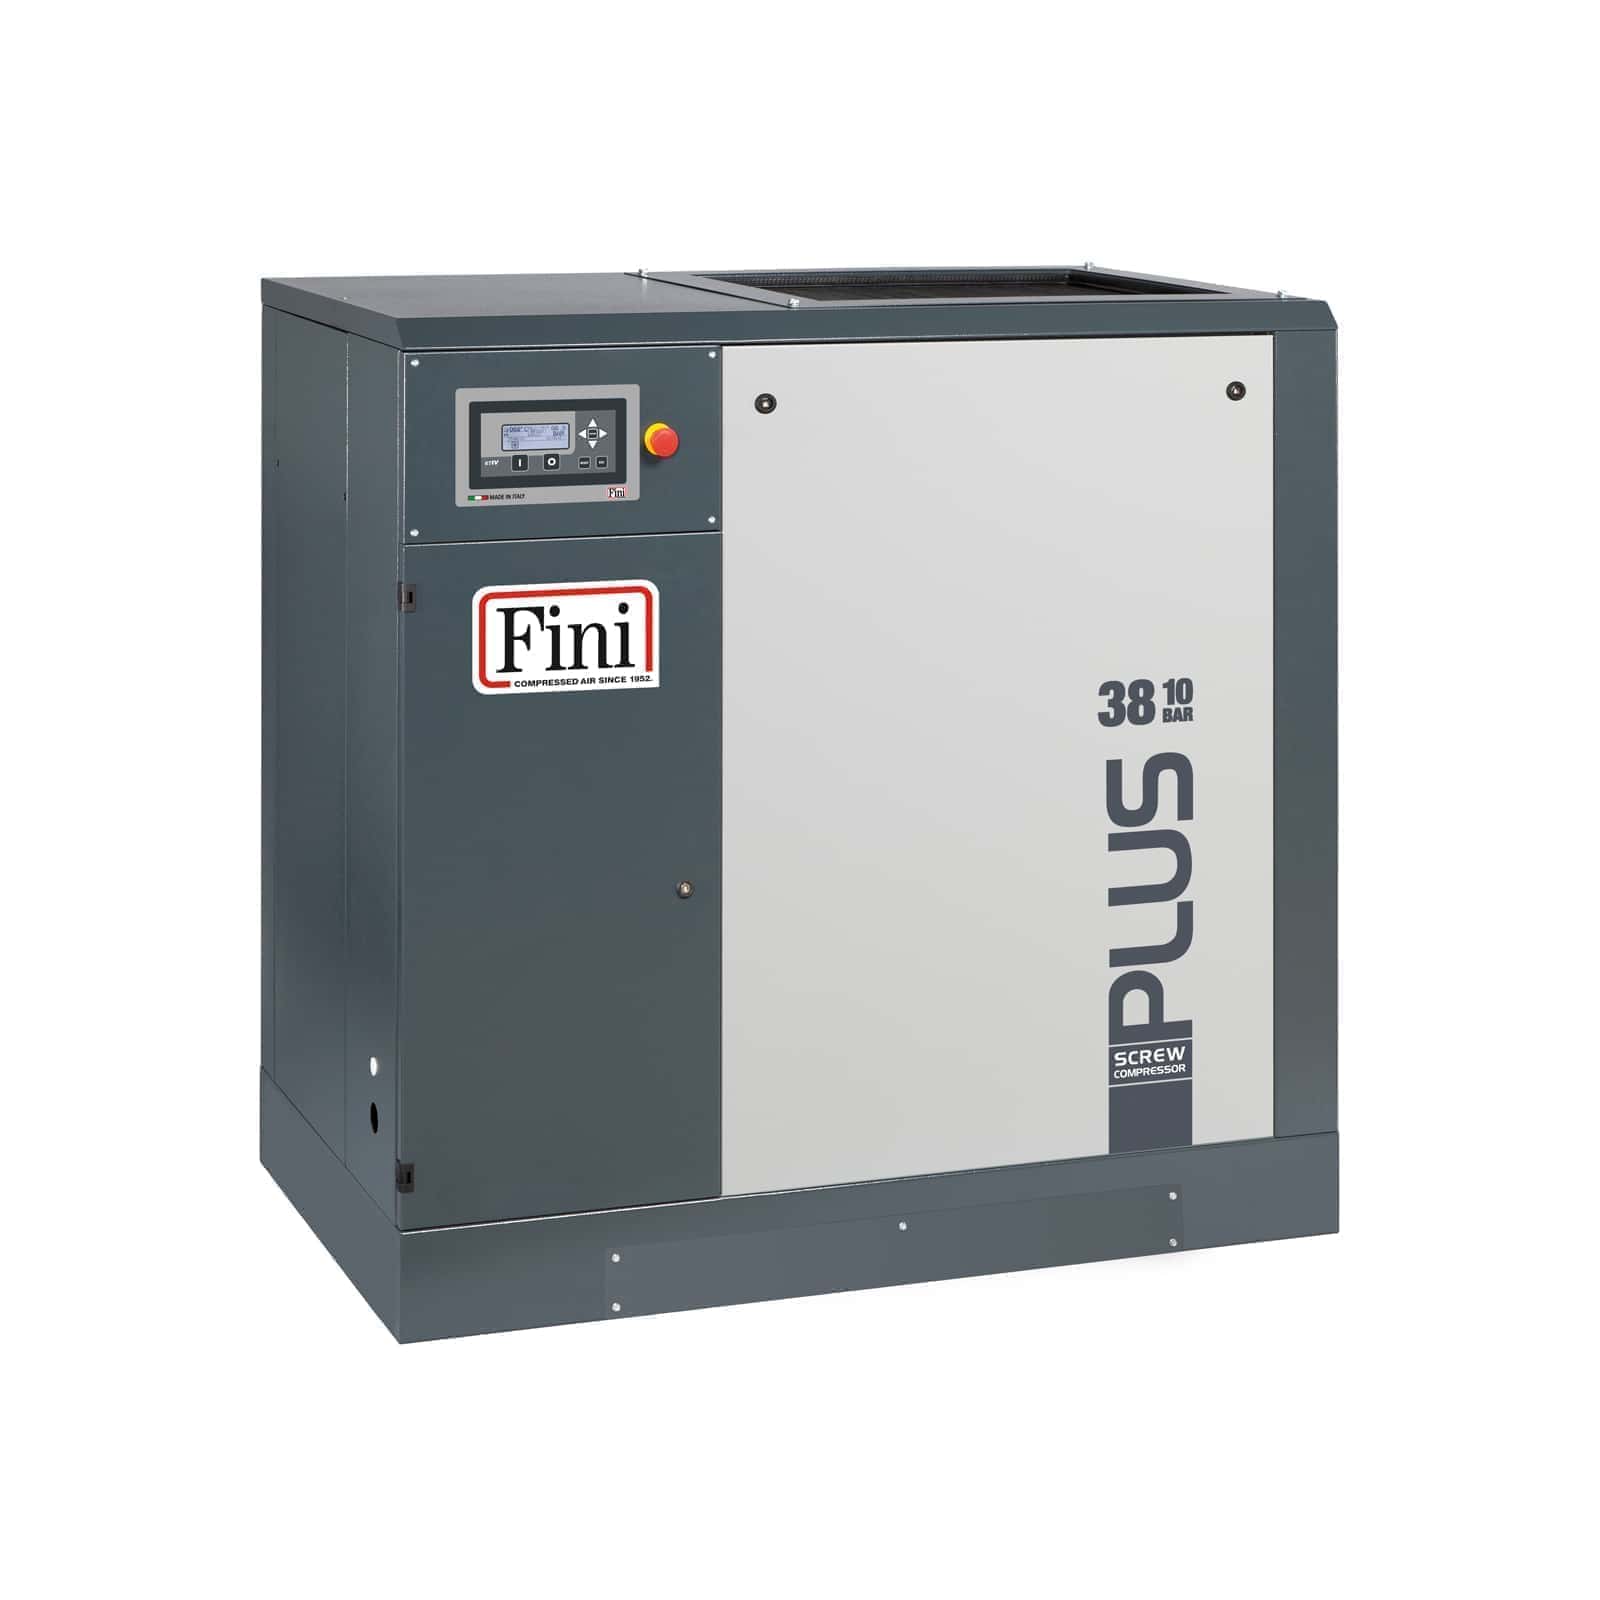 PLUS 38-13 Compressore a vite con trasmissione a cinghia.